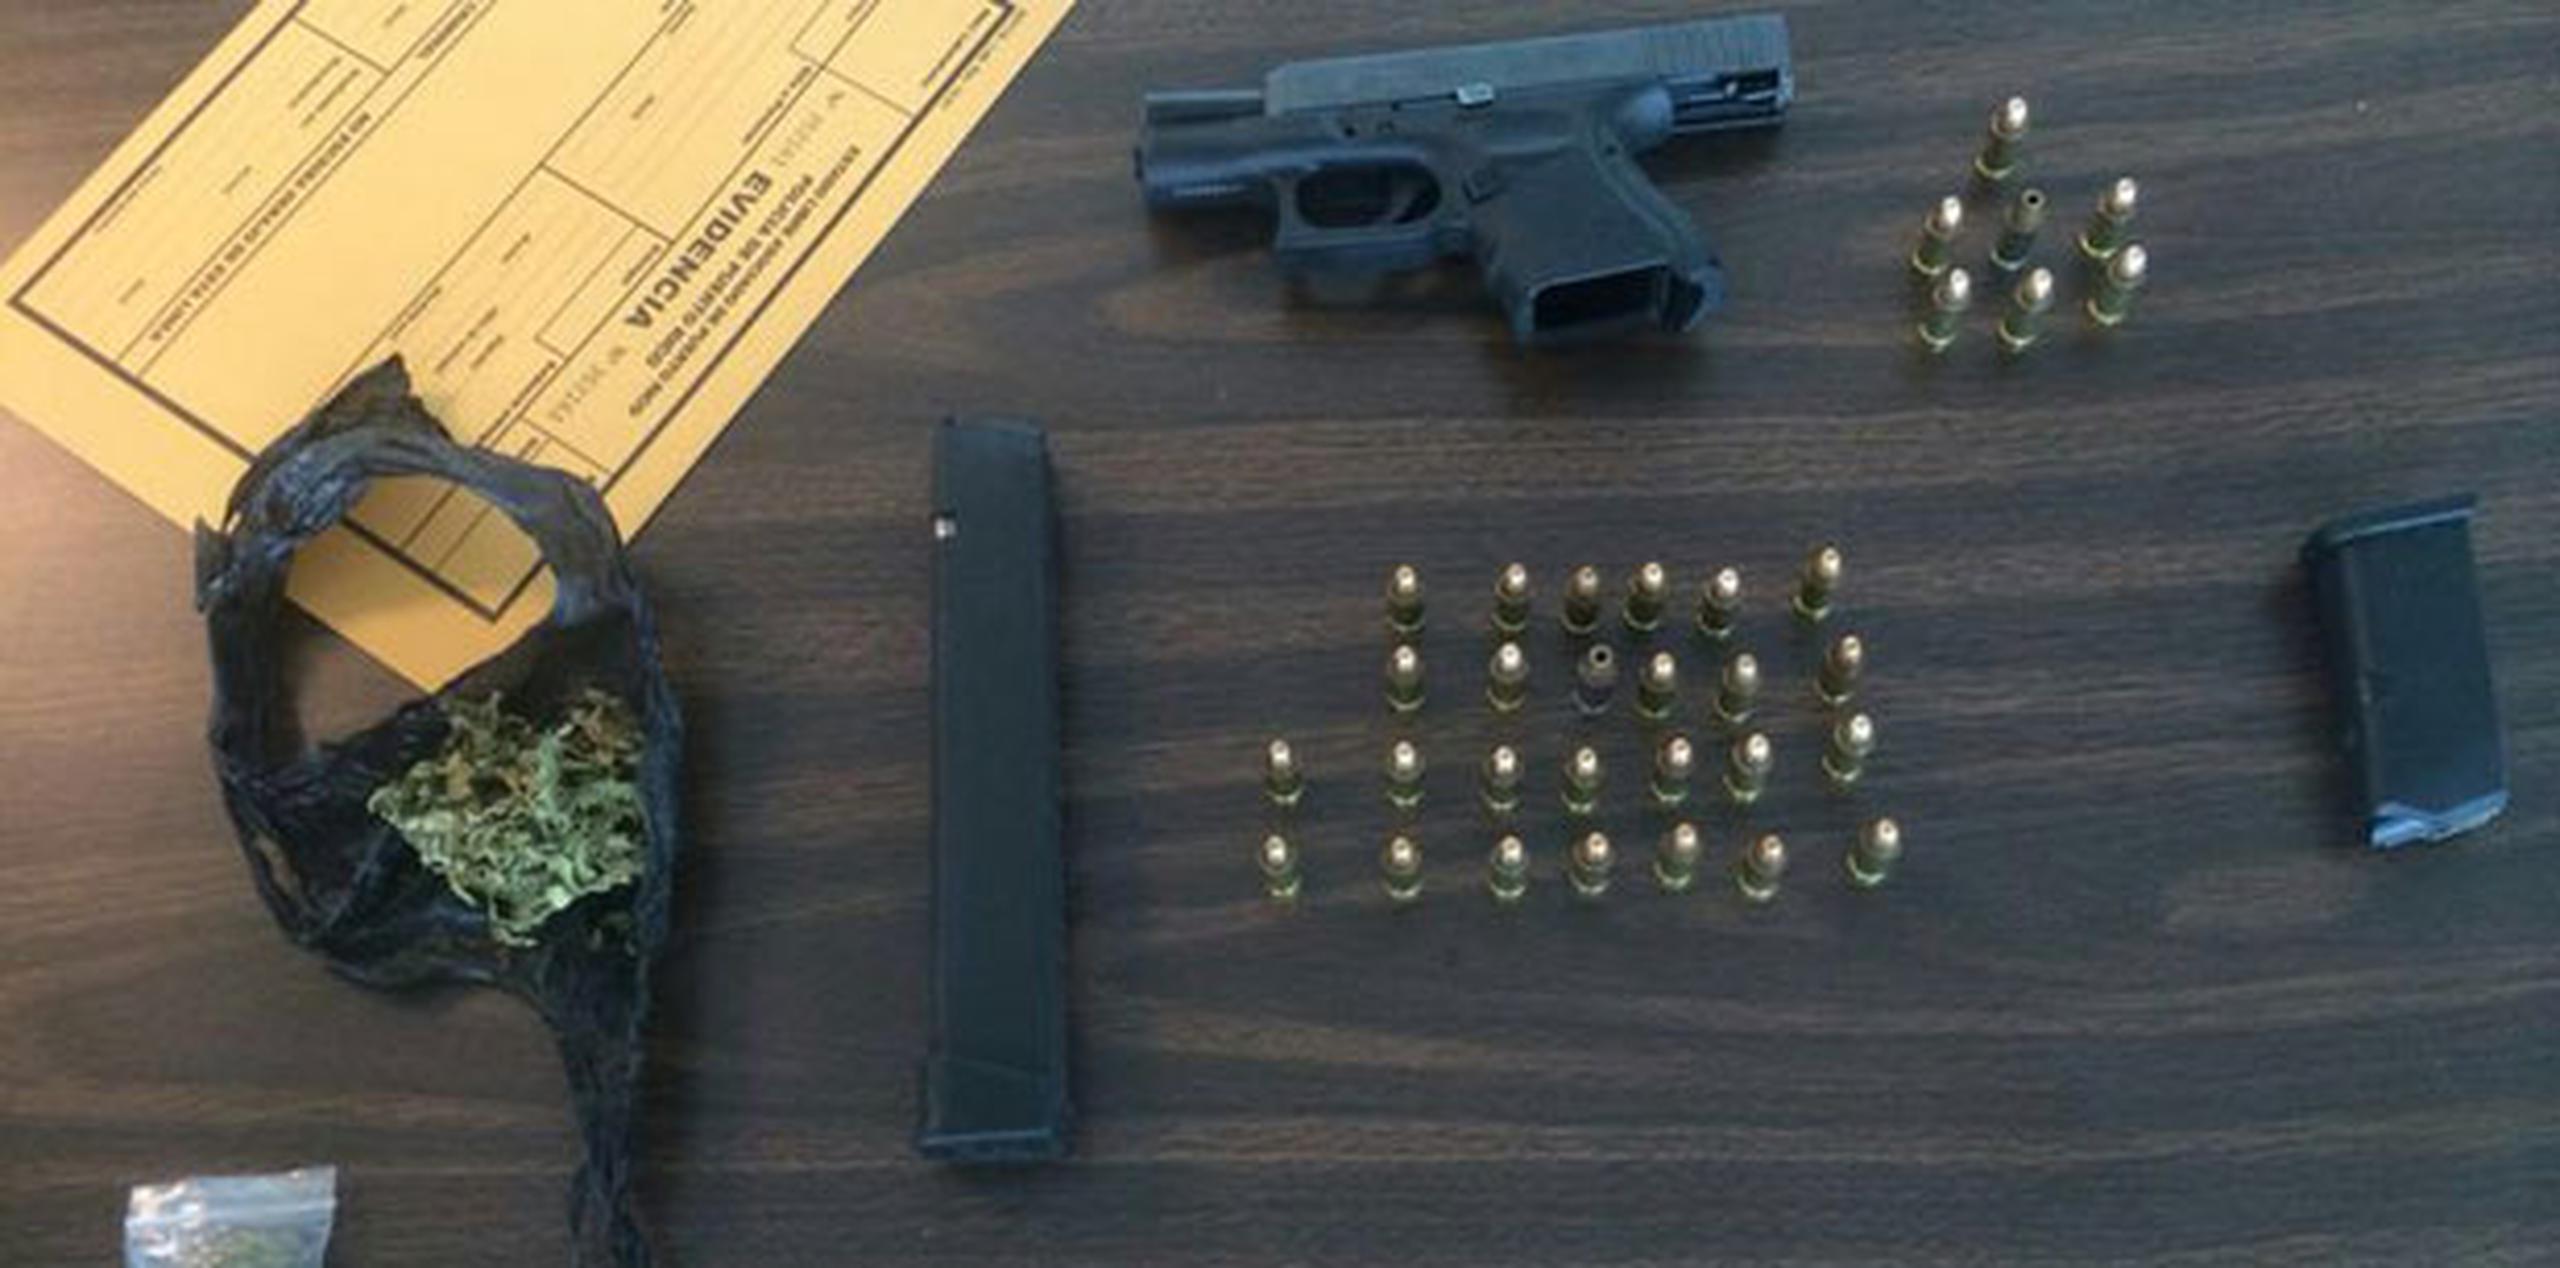 Se le ocupó una pistola cargada marca Glock, calibre 9 milímetros, la cual estaba modificada y 34 balas, agregó Rivera. (Suministrada)